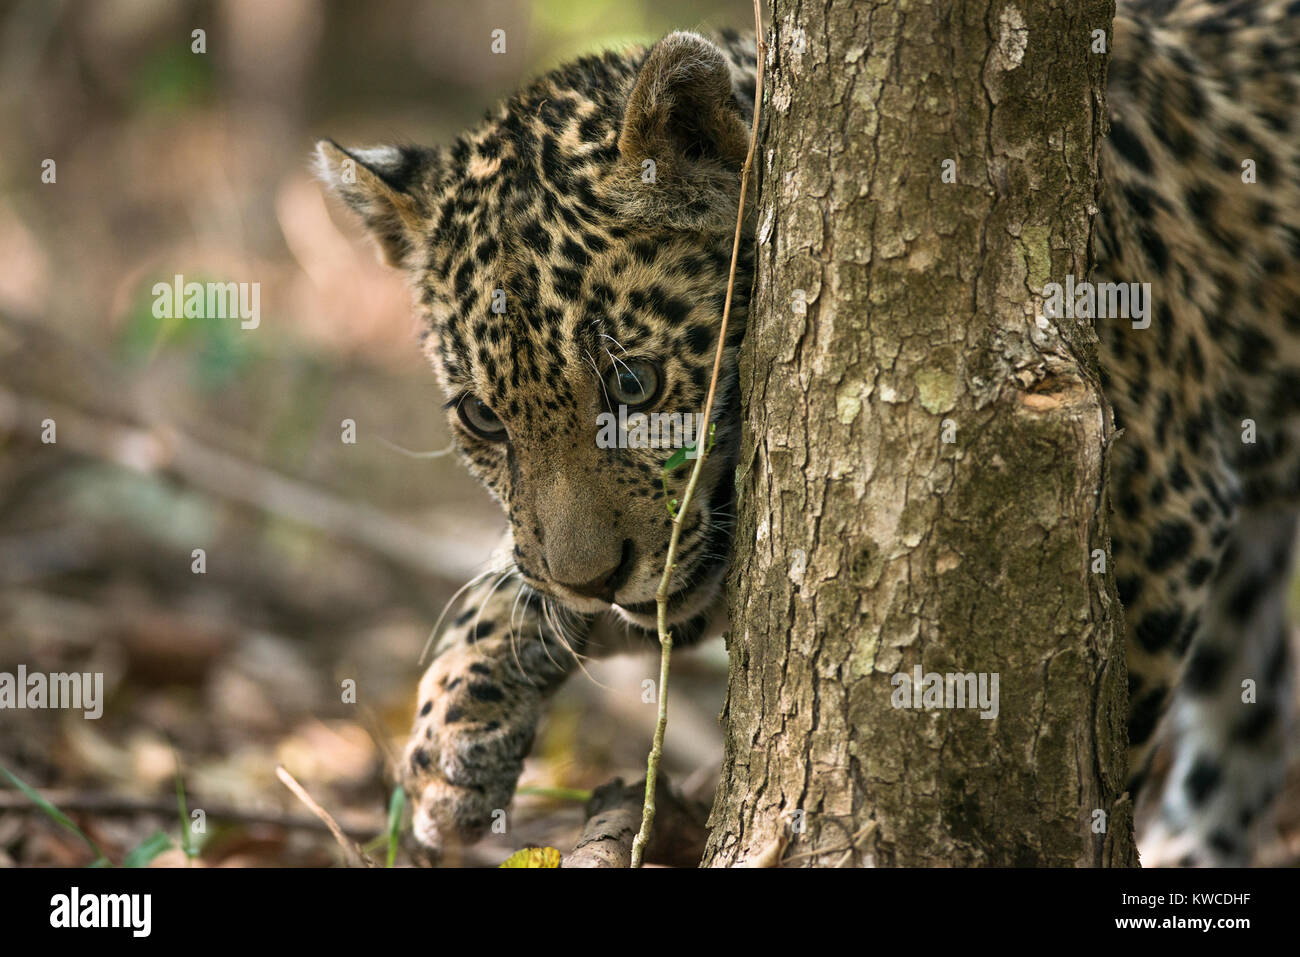 A Jaguar cub Stock Photo